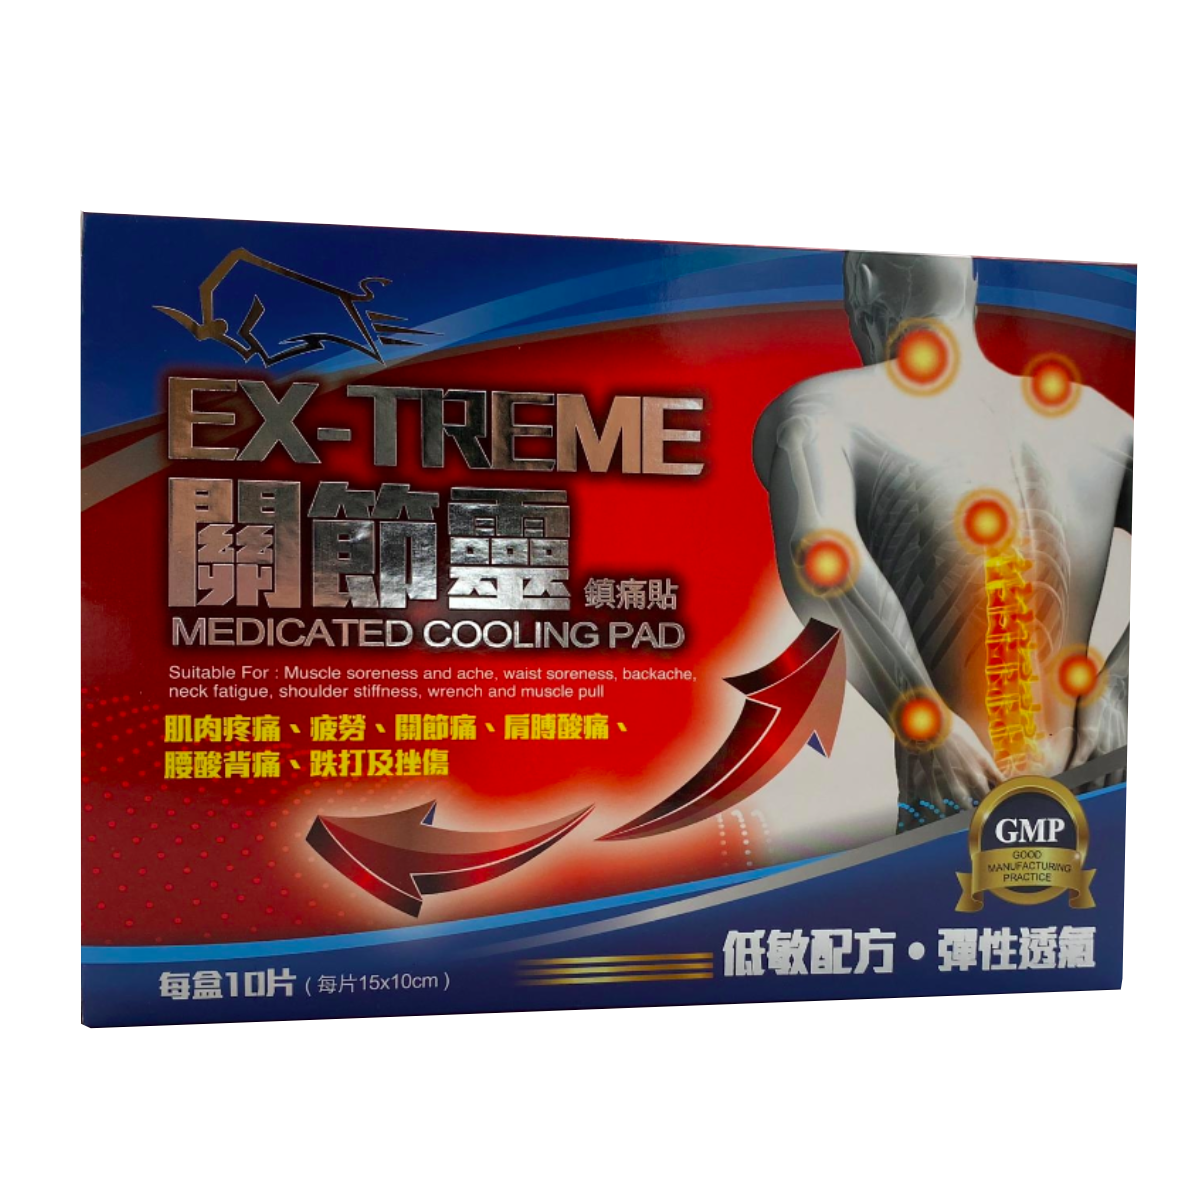 EX-TREME Joint Spirit - Sore Pain Patch (15×10cm) 1 box of 10 pieces